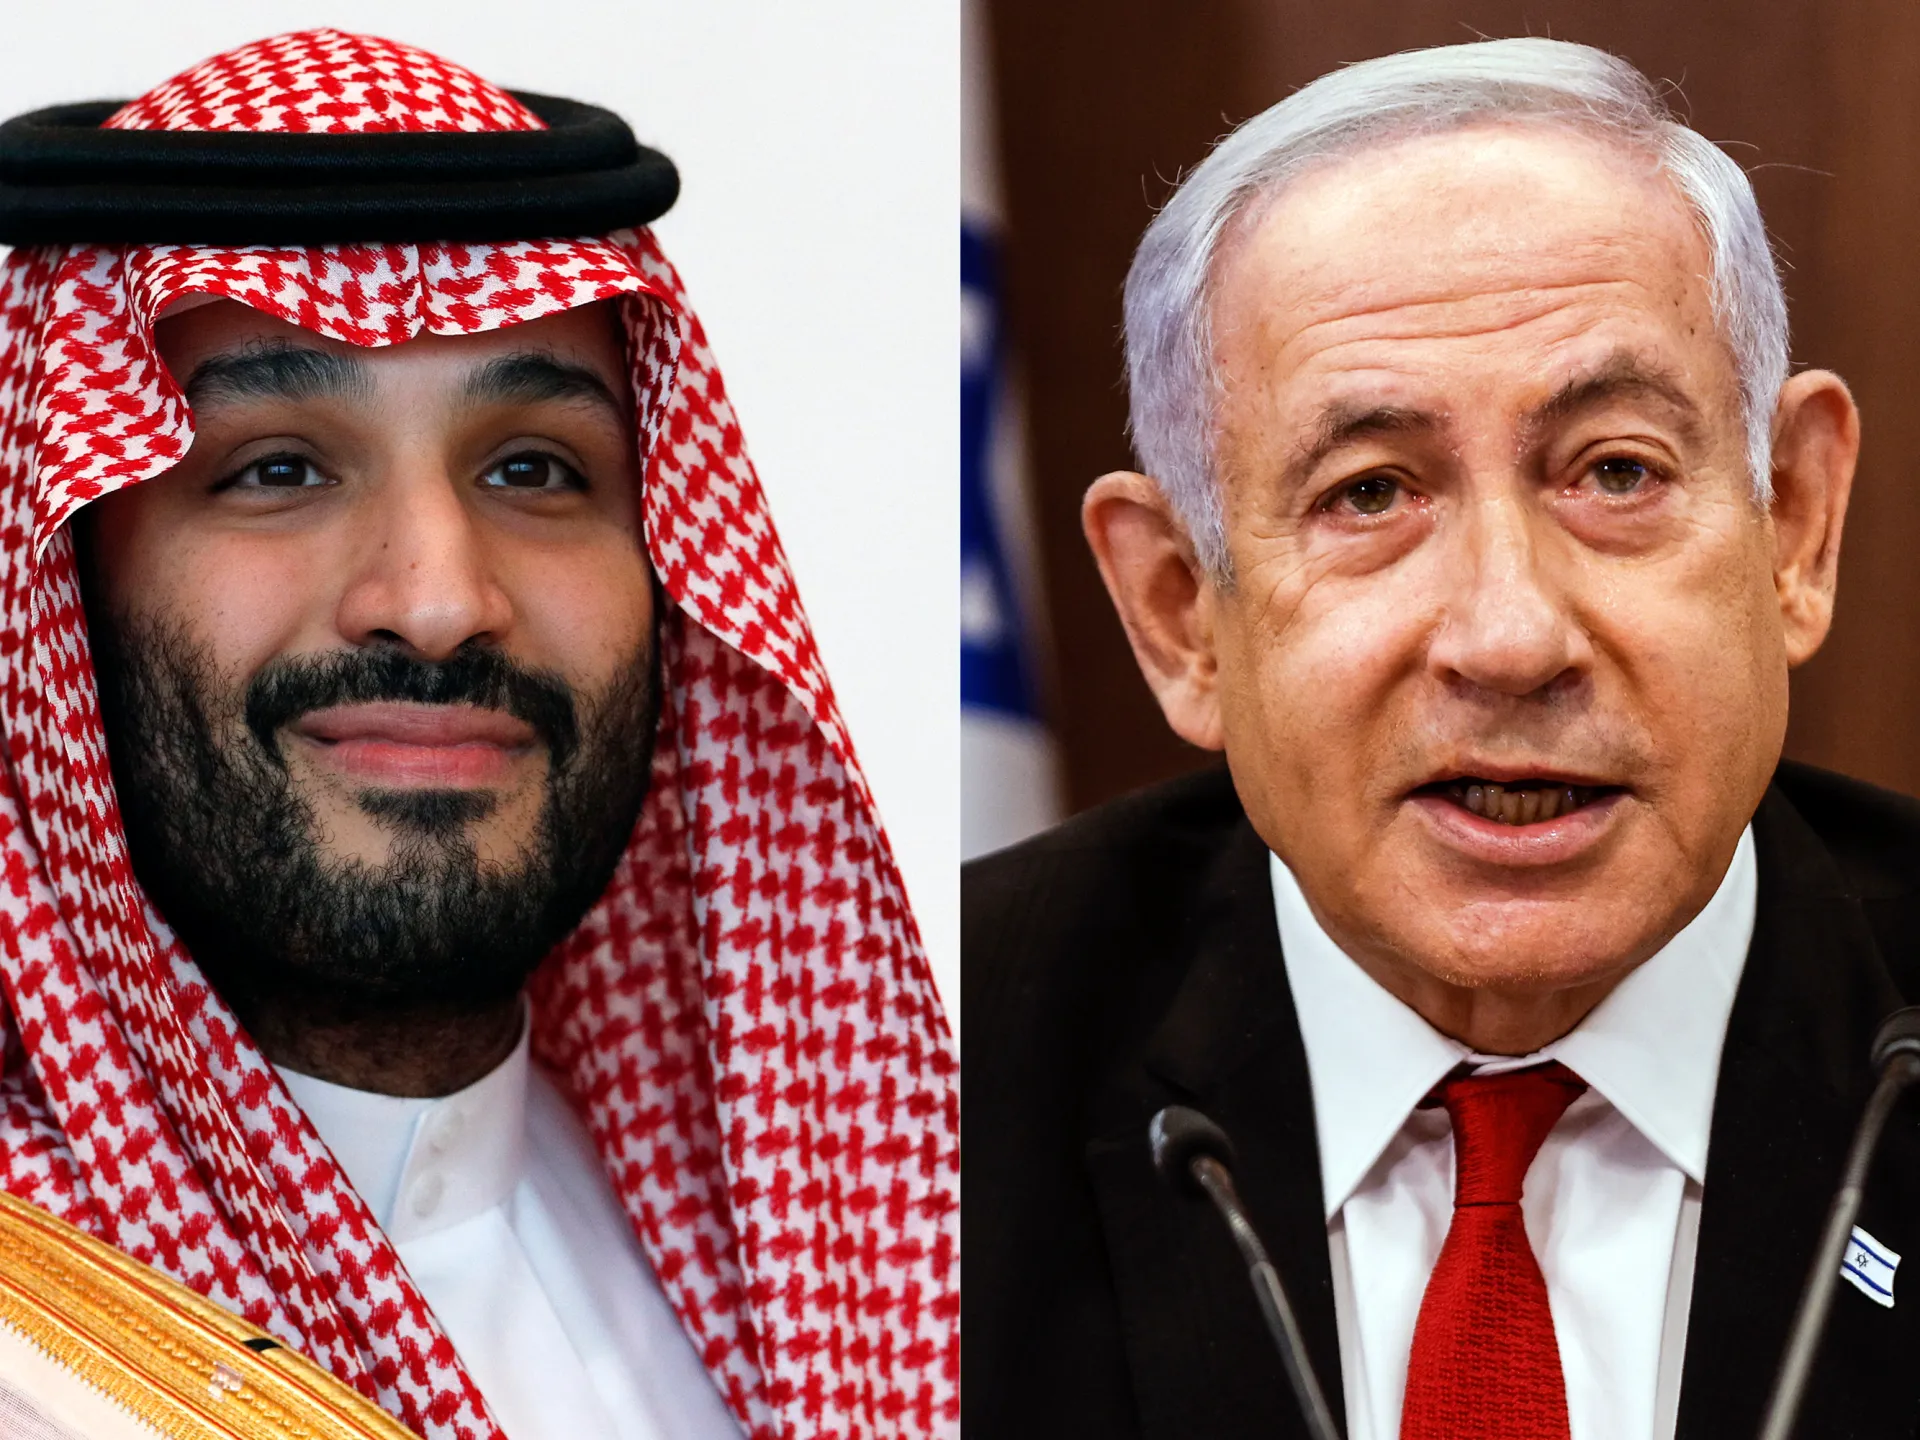 Saudi Arabia may be open to befriending Israel.